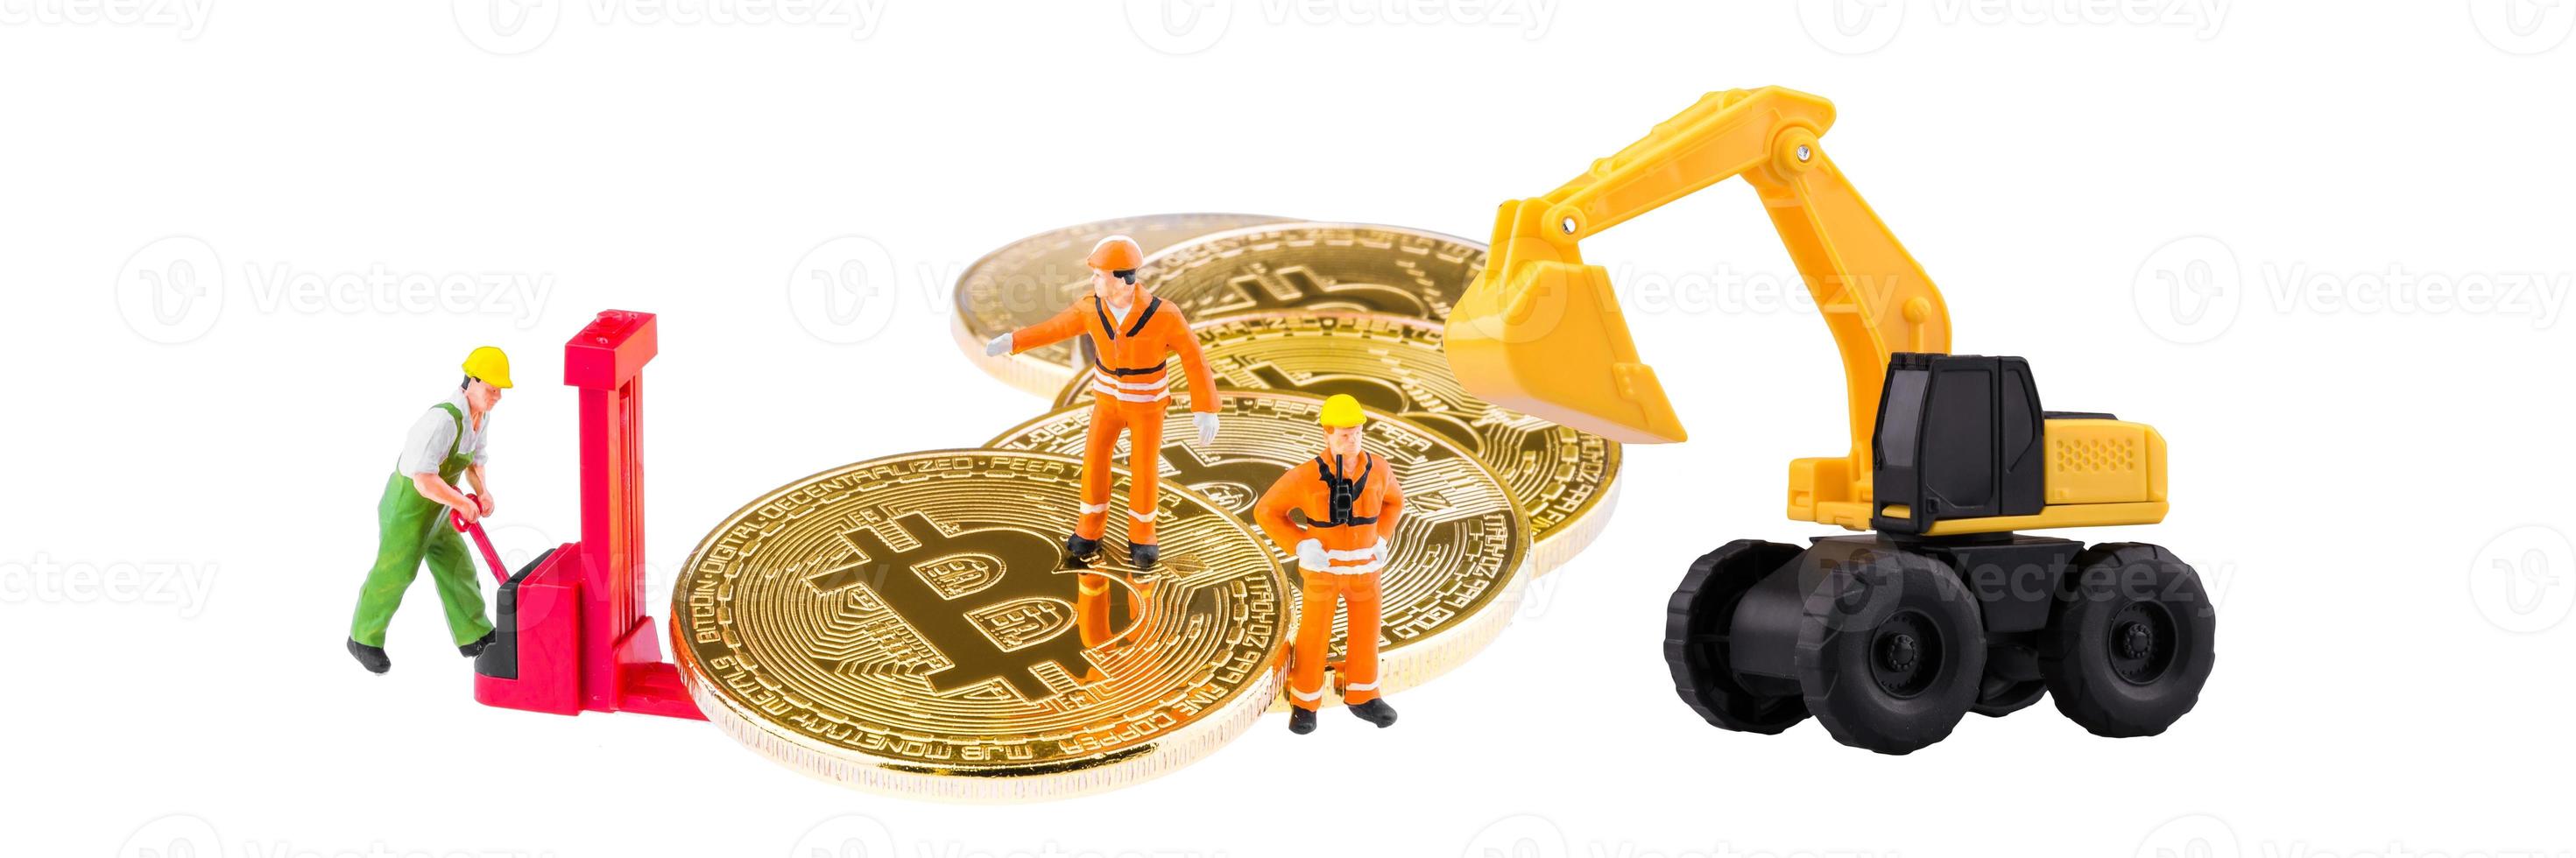 engenheiro e trabalhador em miniatura estão minerando e transferindo atividades de bitcoin. projeto conceitual para tecnologia de criptomoeda e blockchain foto